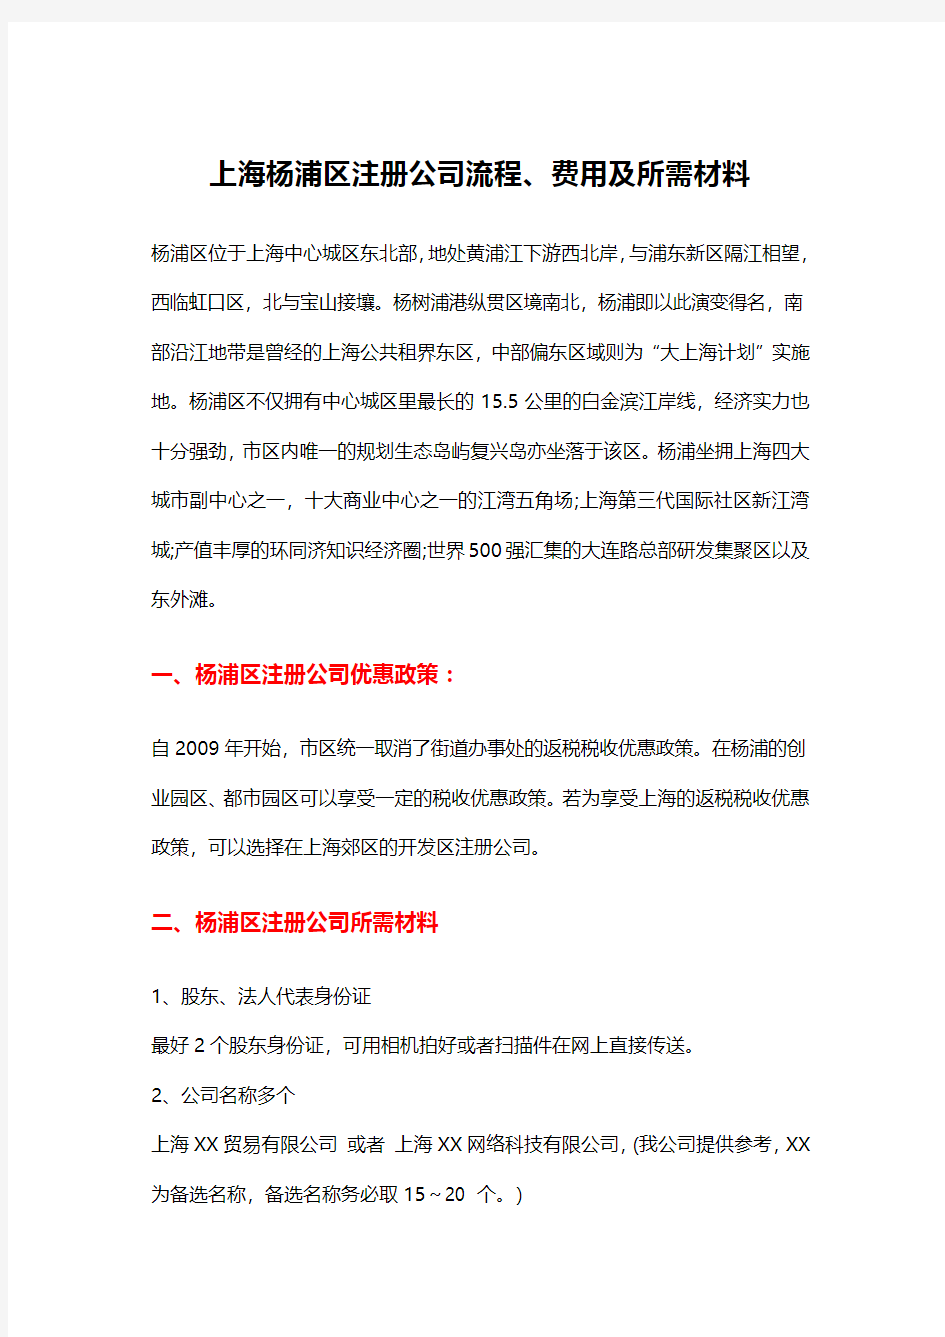 上海杨浦区注册公司流程、费用及所需材料